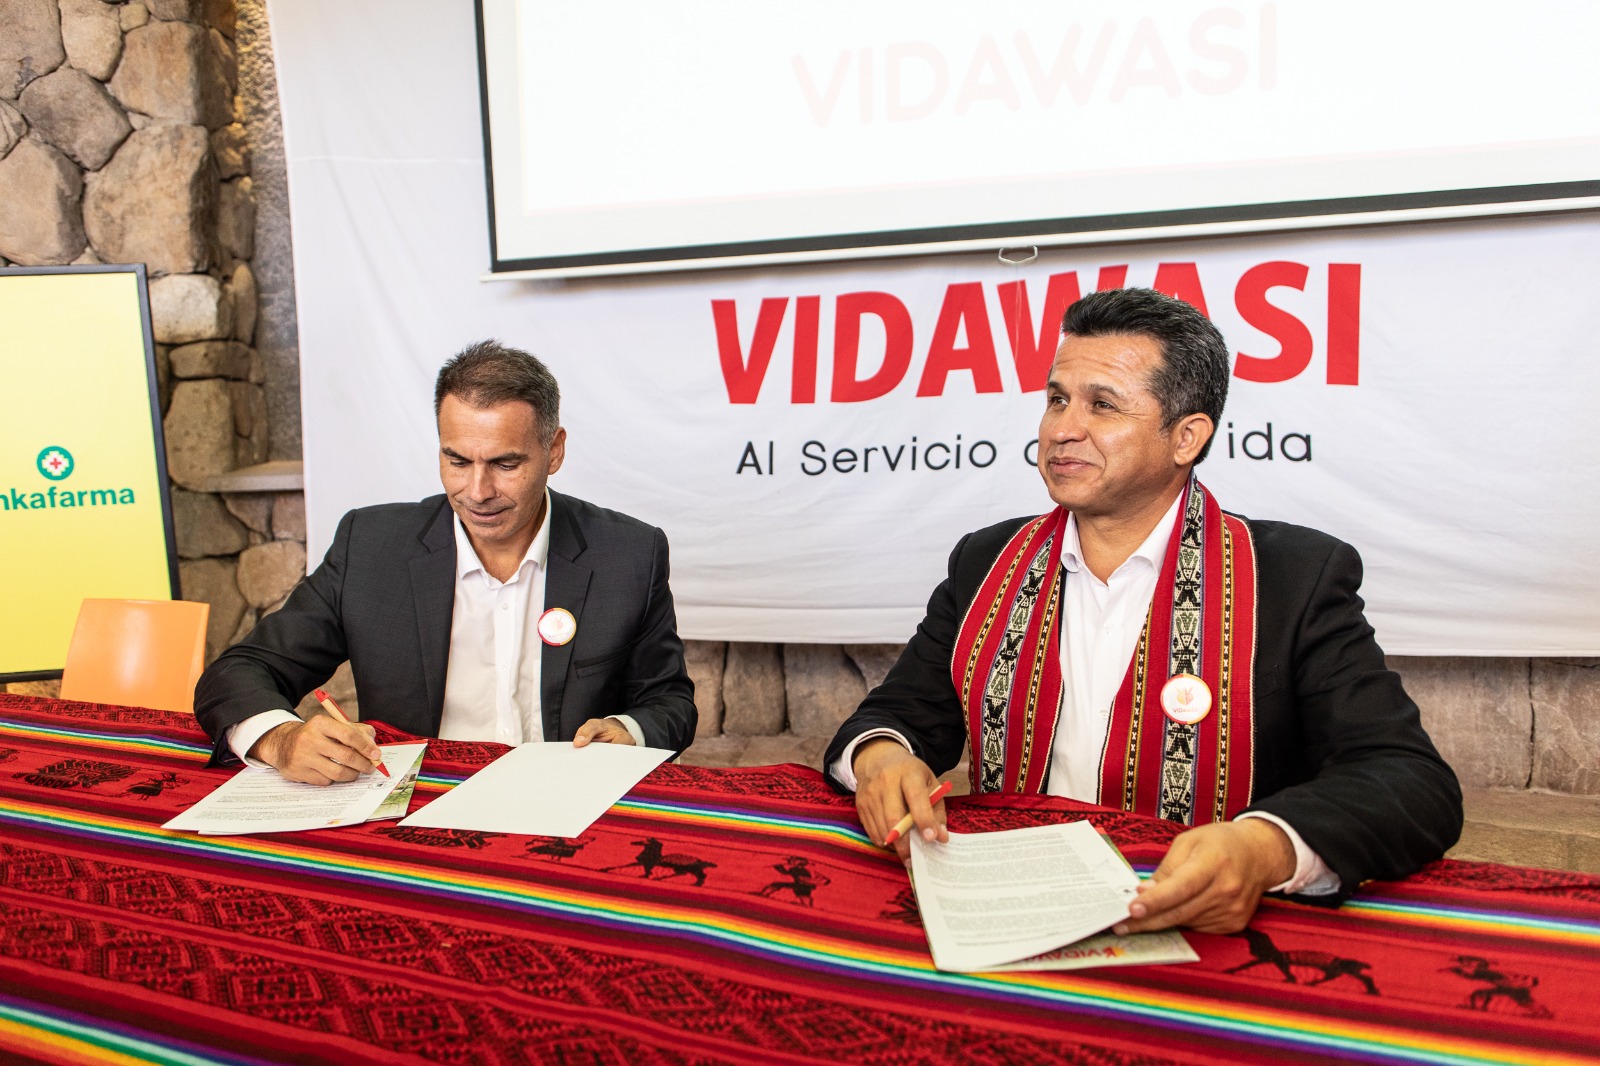 Vidawasi firma un convenio con Inkafarma por la salud de miles de niños peruanos.